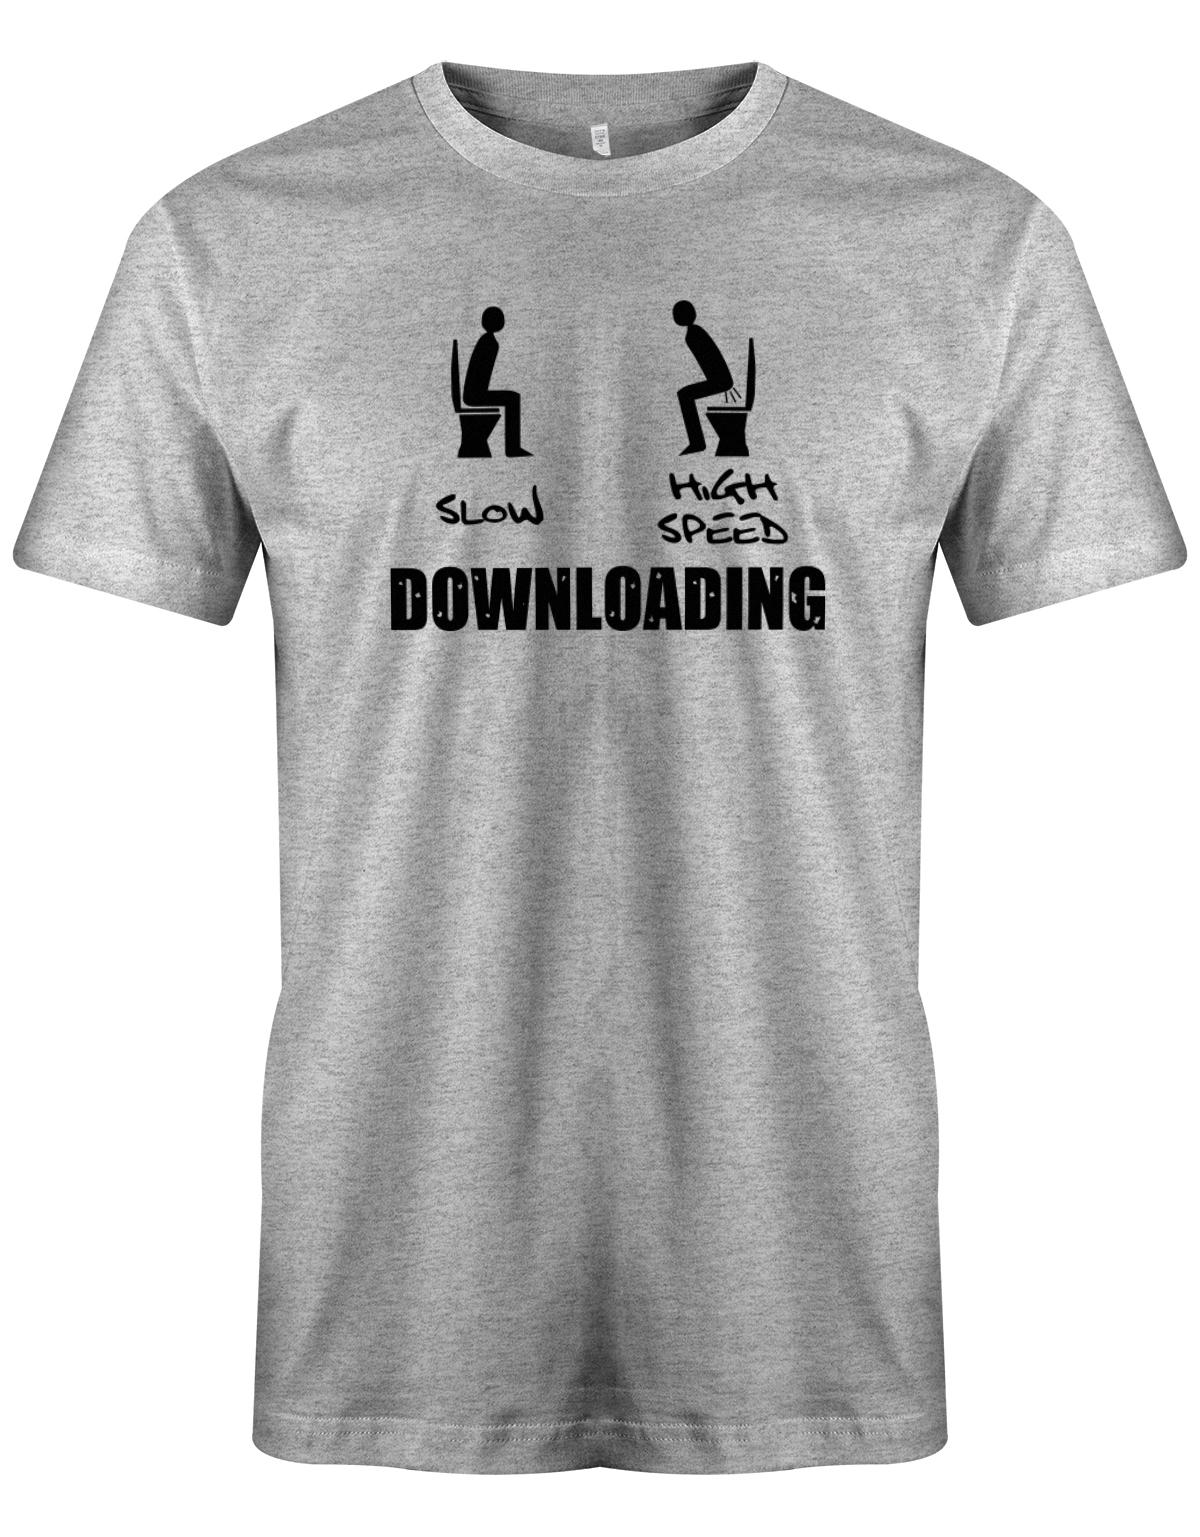 Downloading-Slow-Highspeed-Gamer-Shirt-Grau